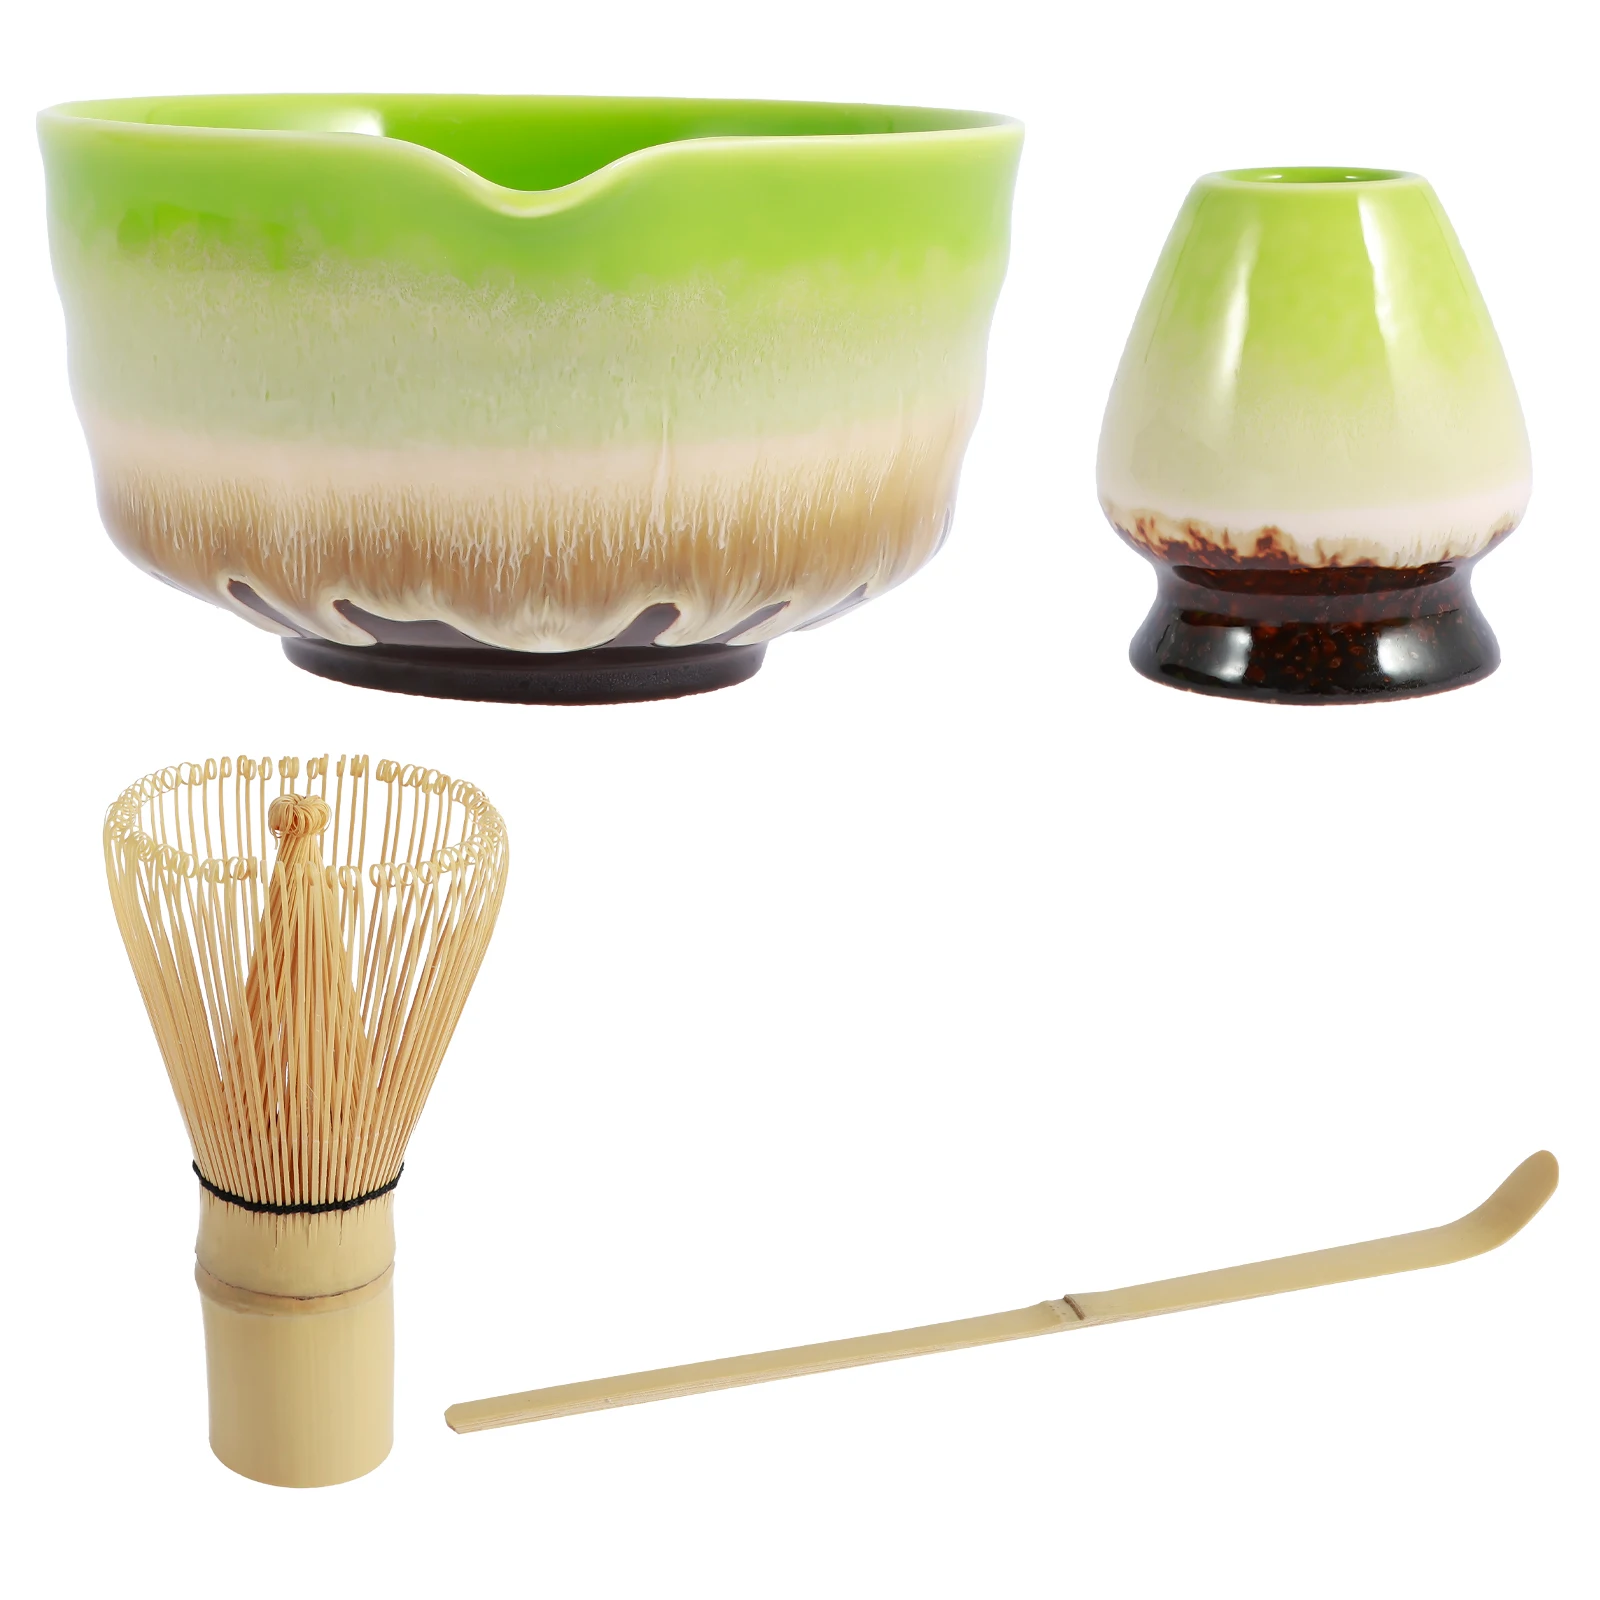 4pcs-matcha-whisk-set-elegant-glazed-matcha-making-kit-reusable-matcha-set-with-bamboo-matcha-whisk-matcha-scoop-ceramic-matcha